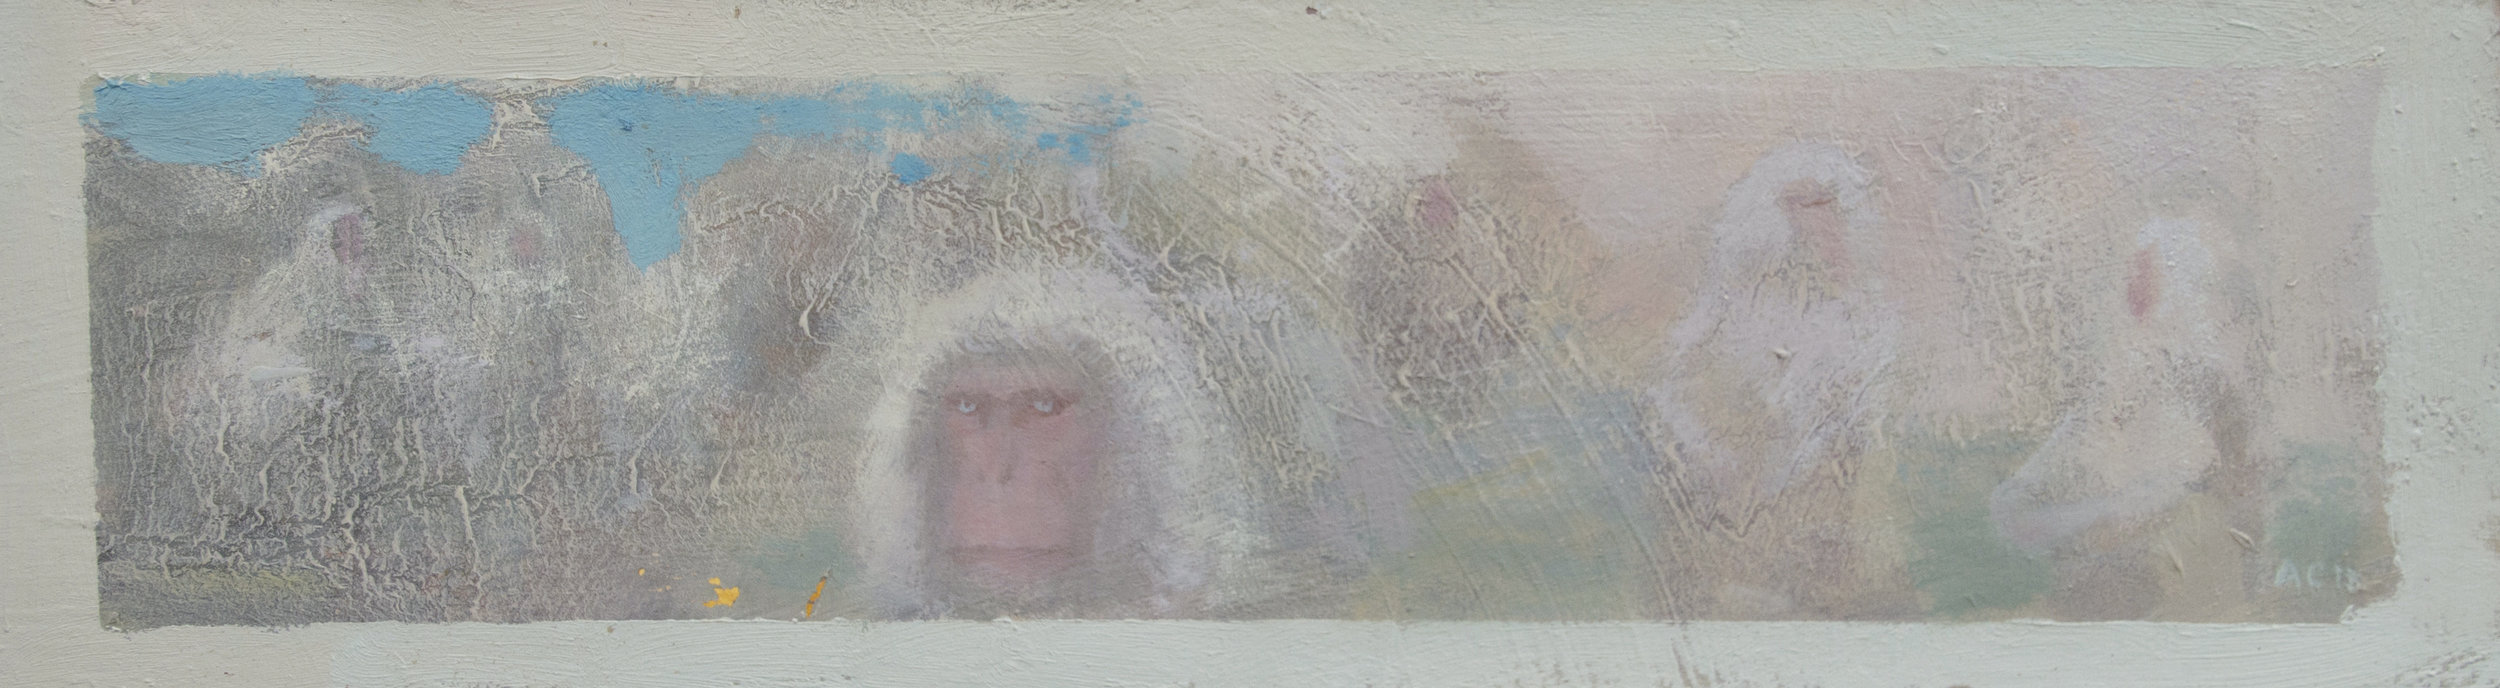 Snow Monkeys, 4 1/4" x 12 1/2", Oil on museum board, 2018